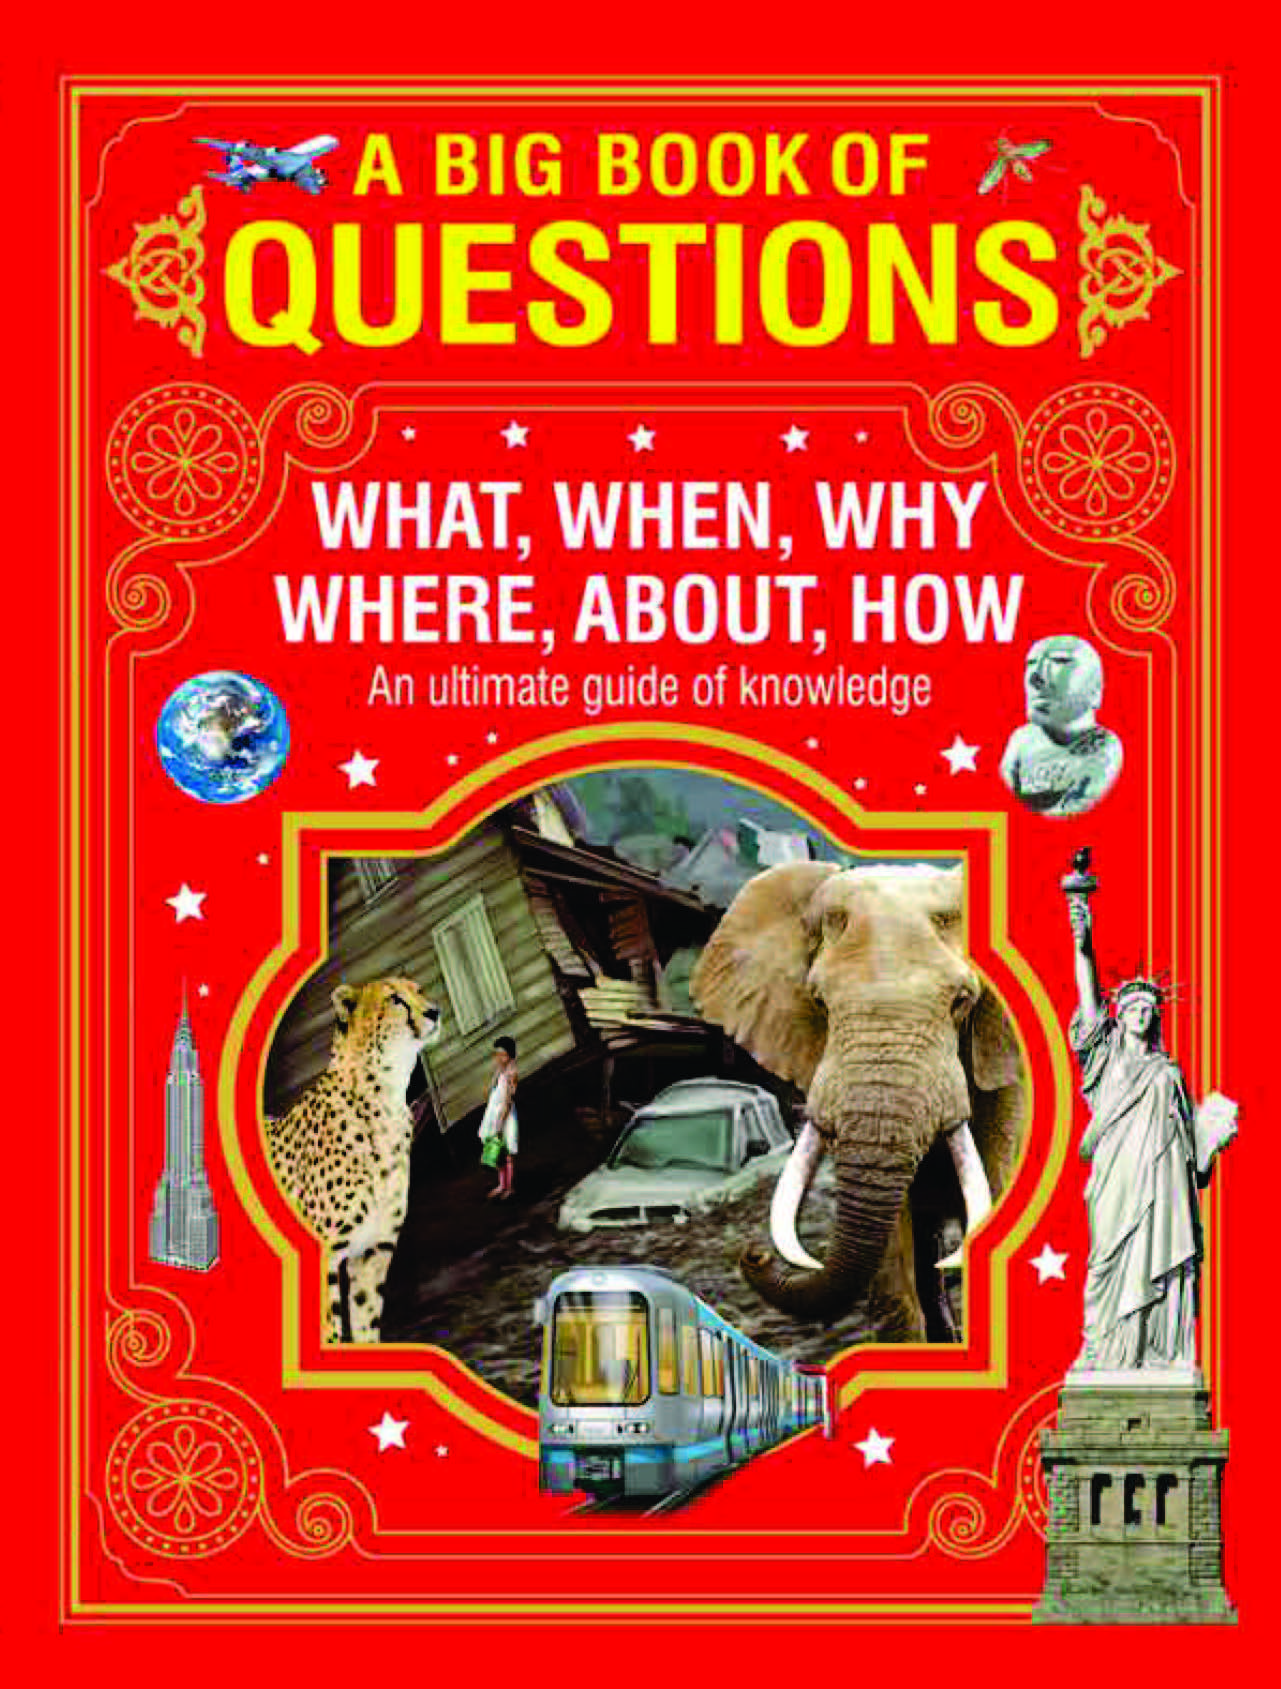 A big book of Questions